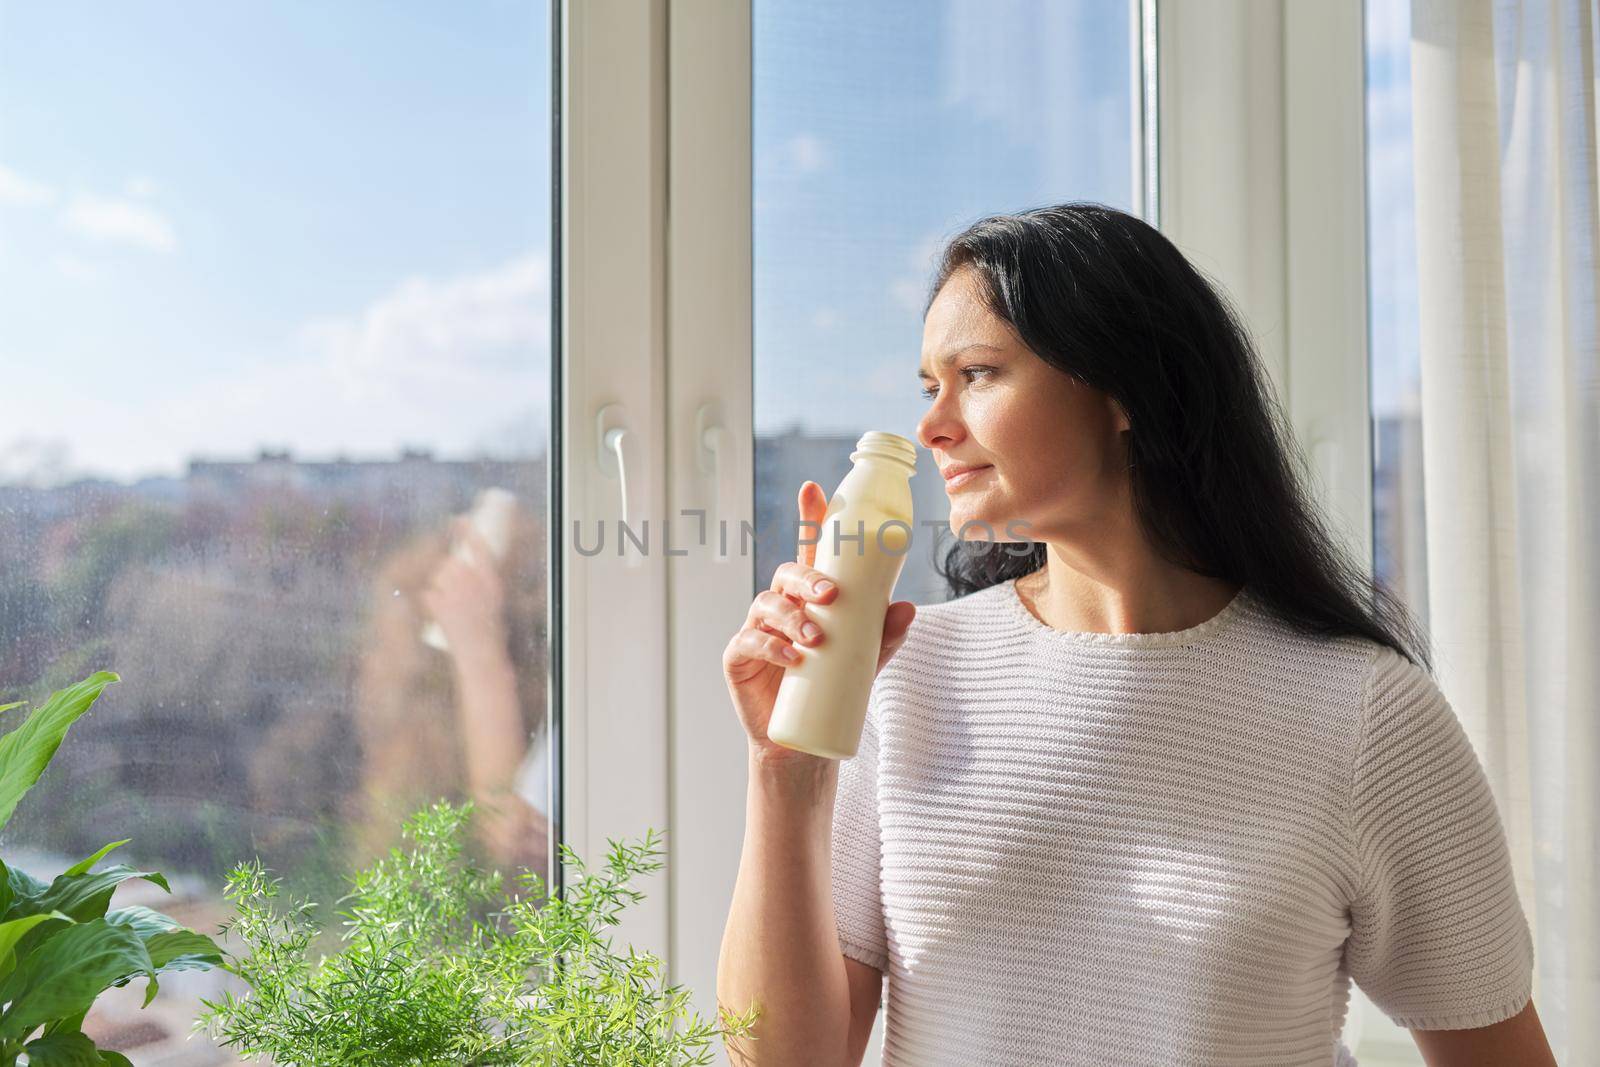 Woman drinking milk drink from bottle standing near window, milk yogurt dairy healthy drinks by VH-studio